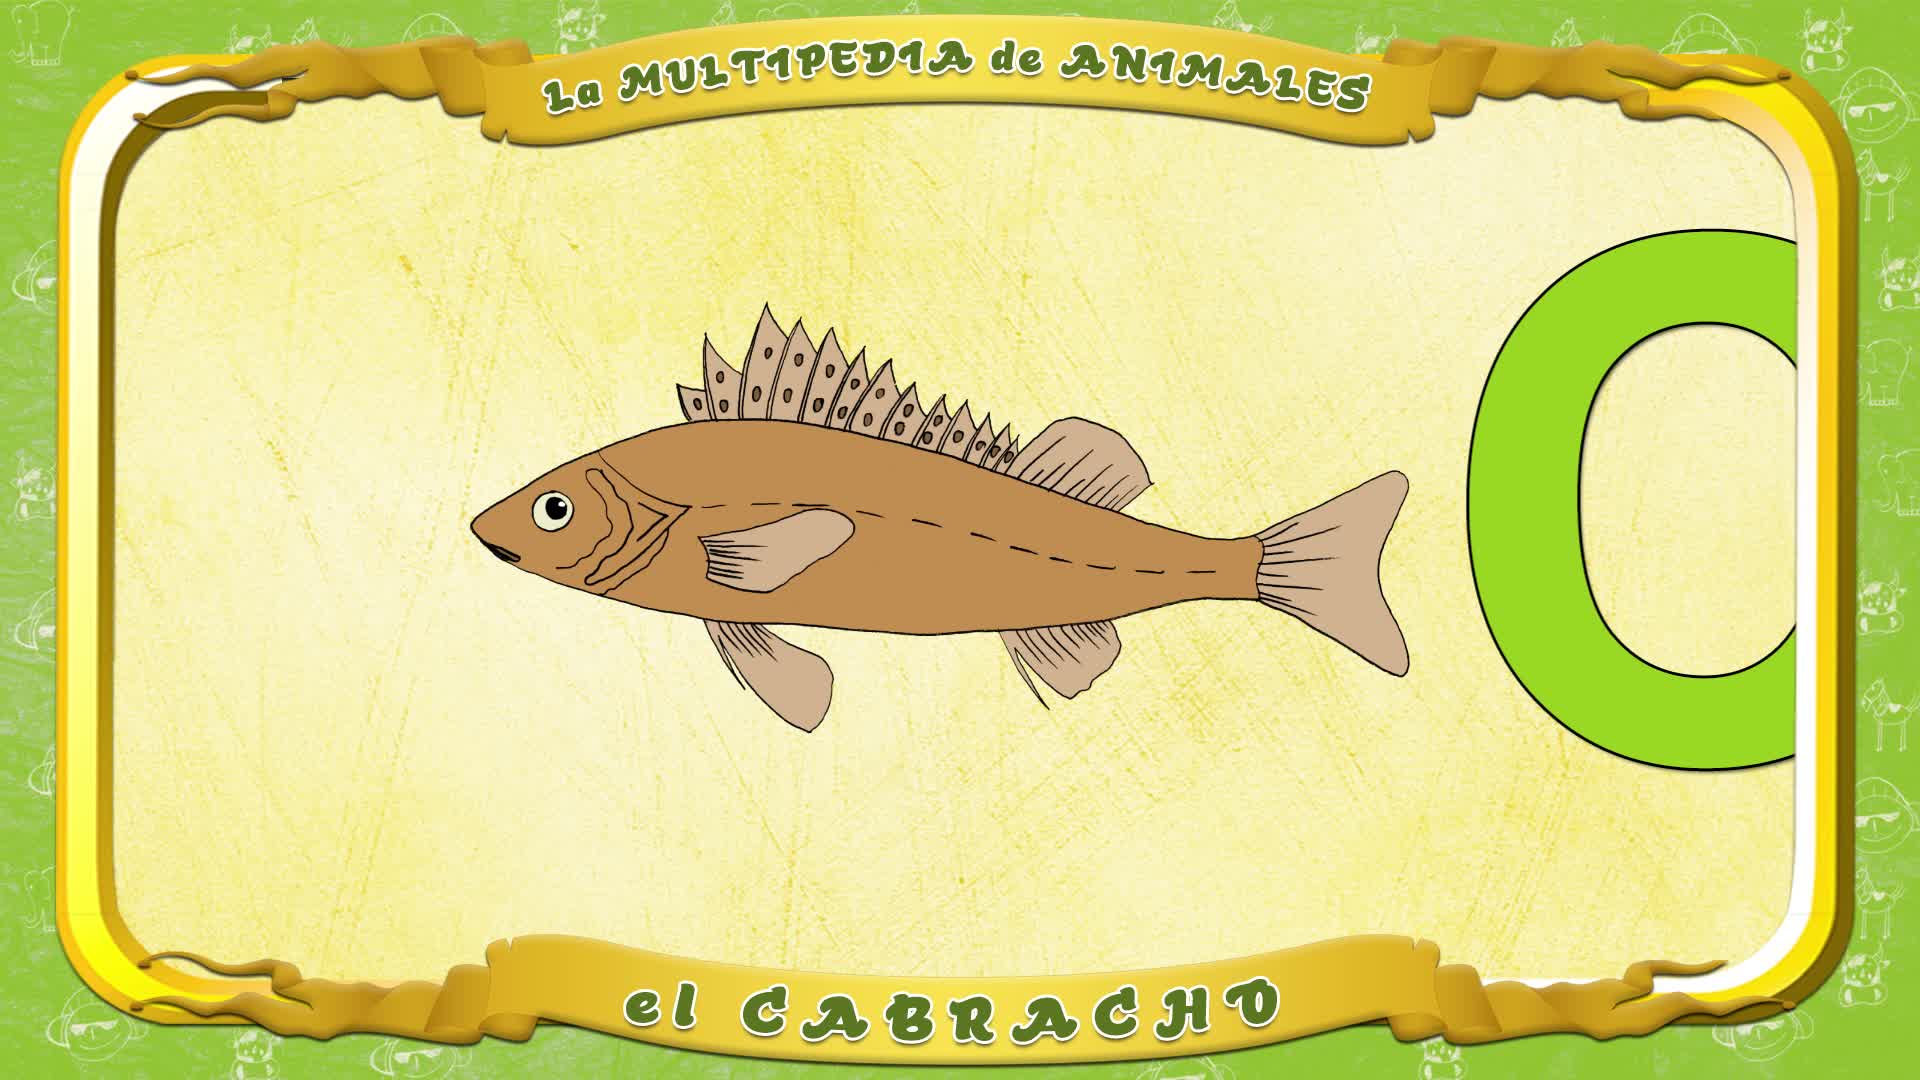 La Multipedia De Animales Letra C El Cabracho смотреть онлайн